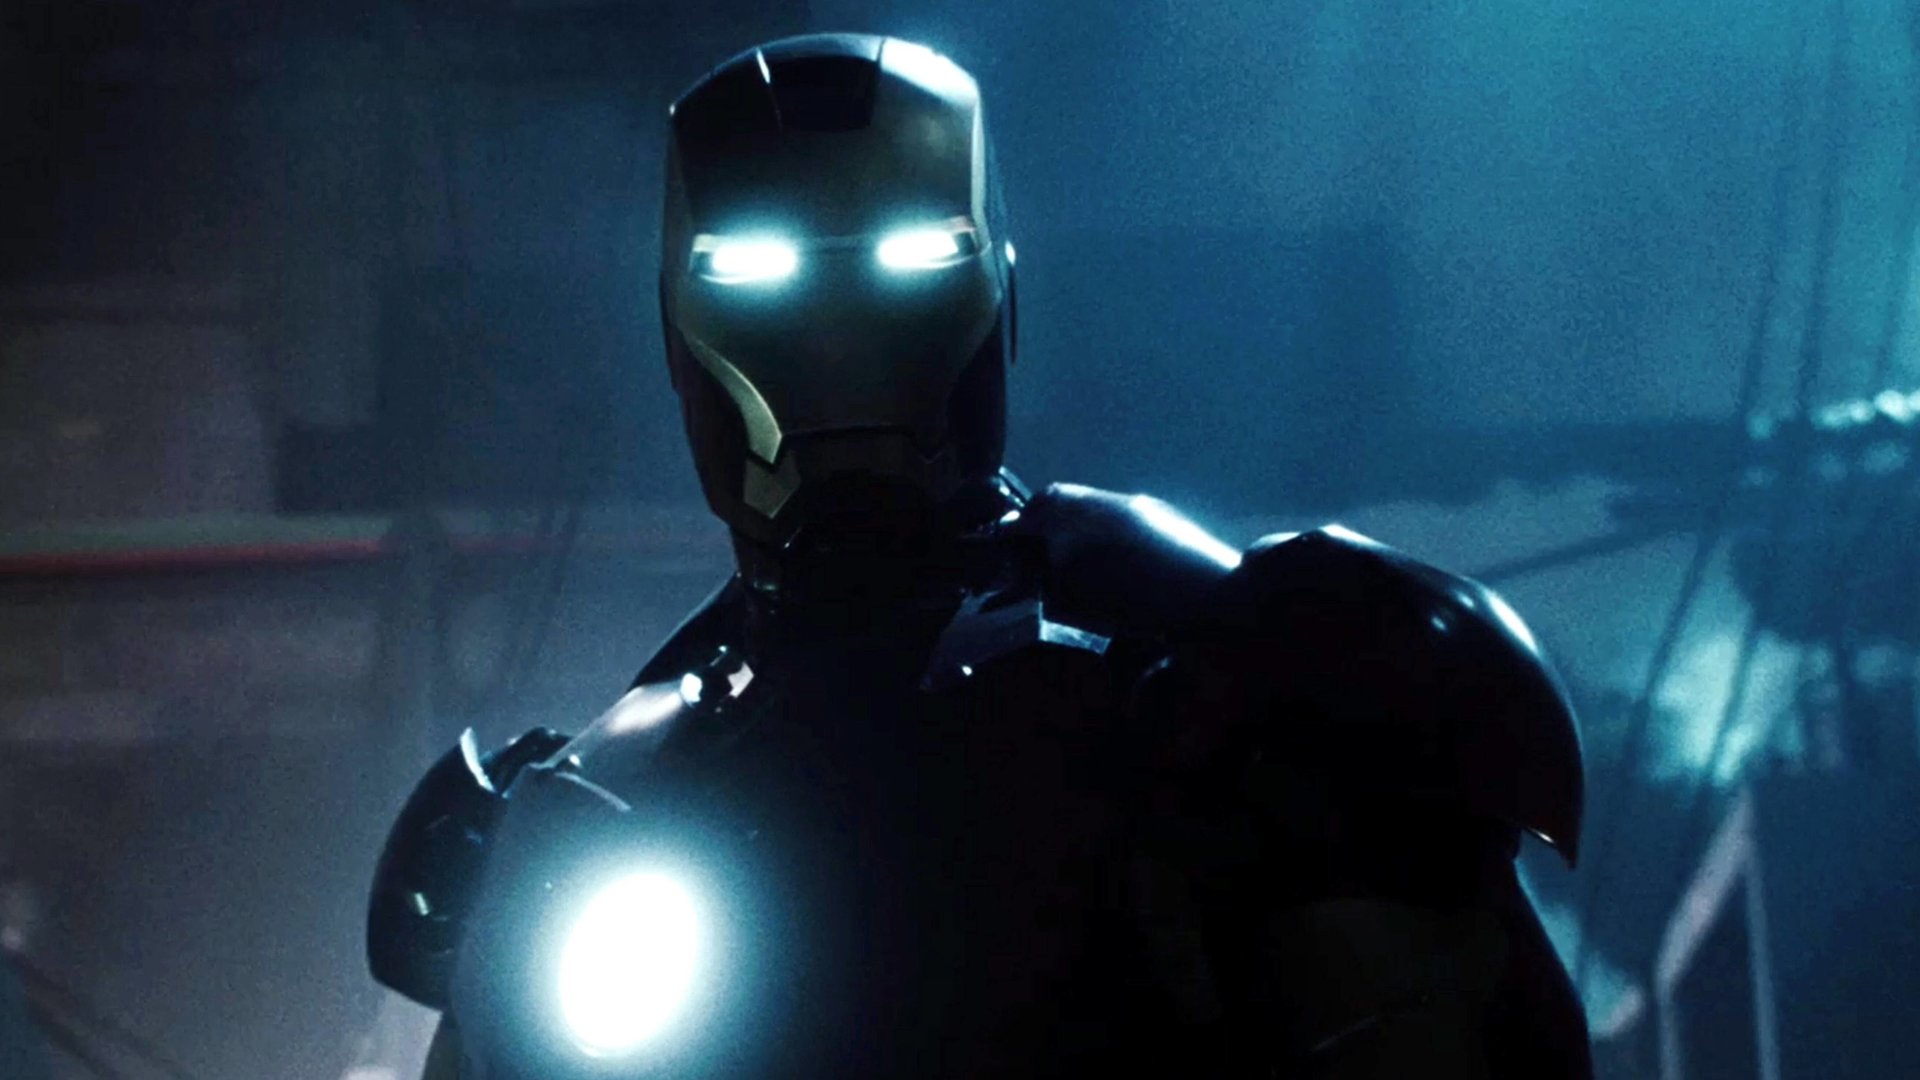 #Streamingtipp: Der für viele beste Marvel-Film, den „Avengers: Endgame“ noch besser gemacht hat